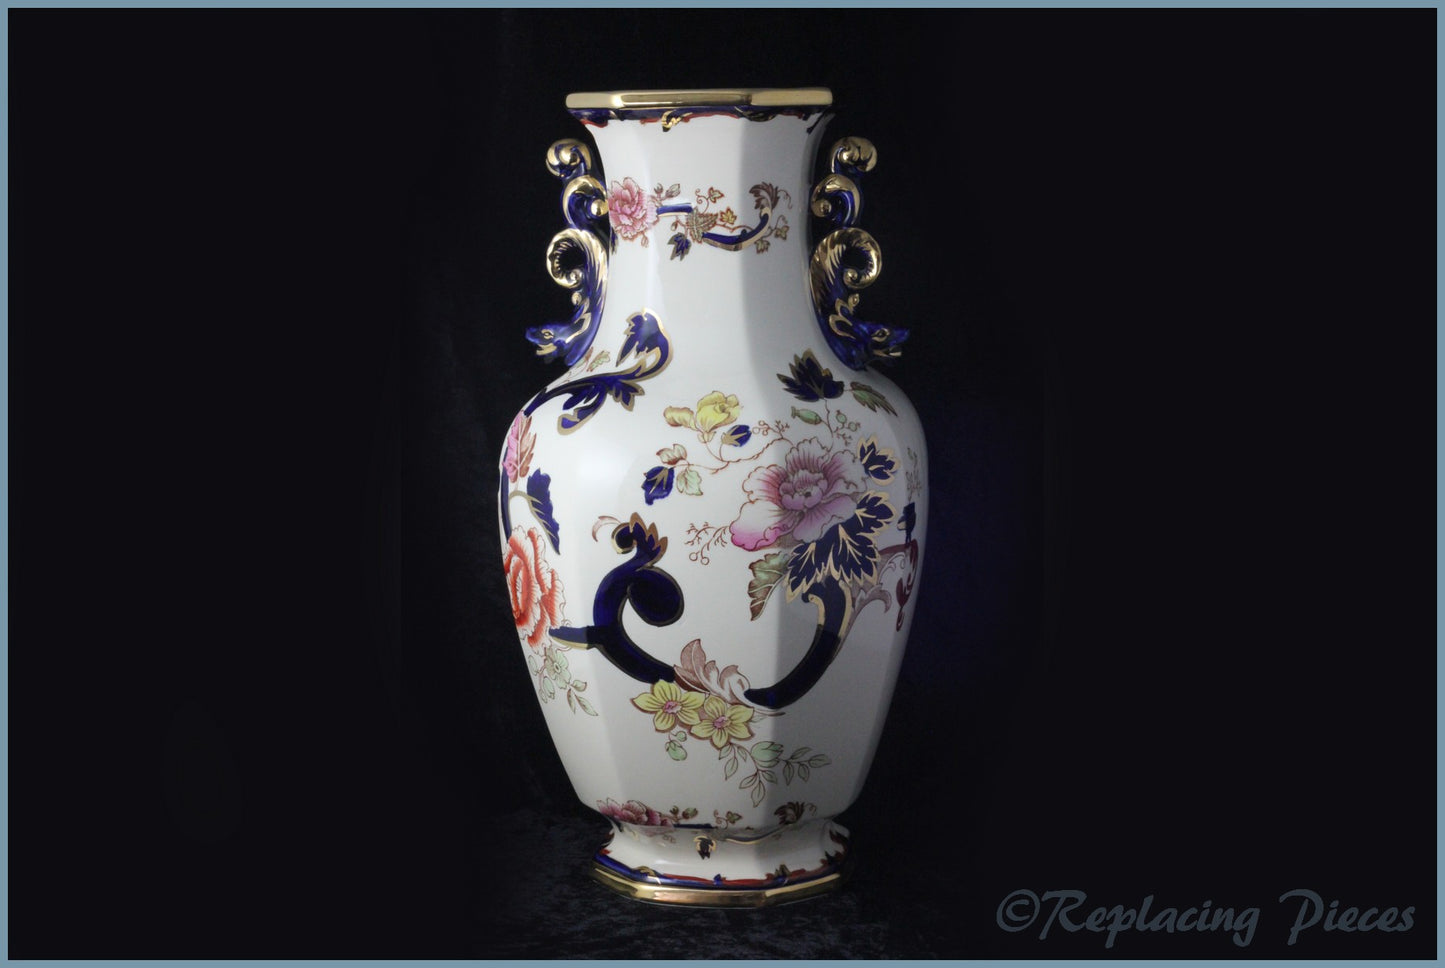 Masons - Mandalay Blue - Handled Vase (Extra Large)